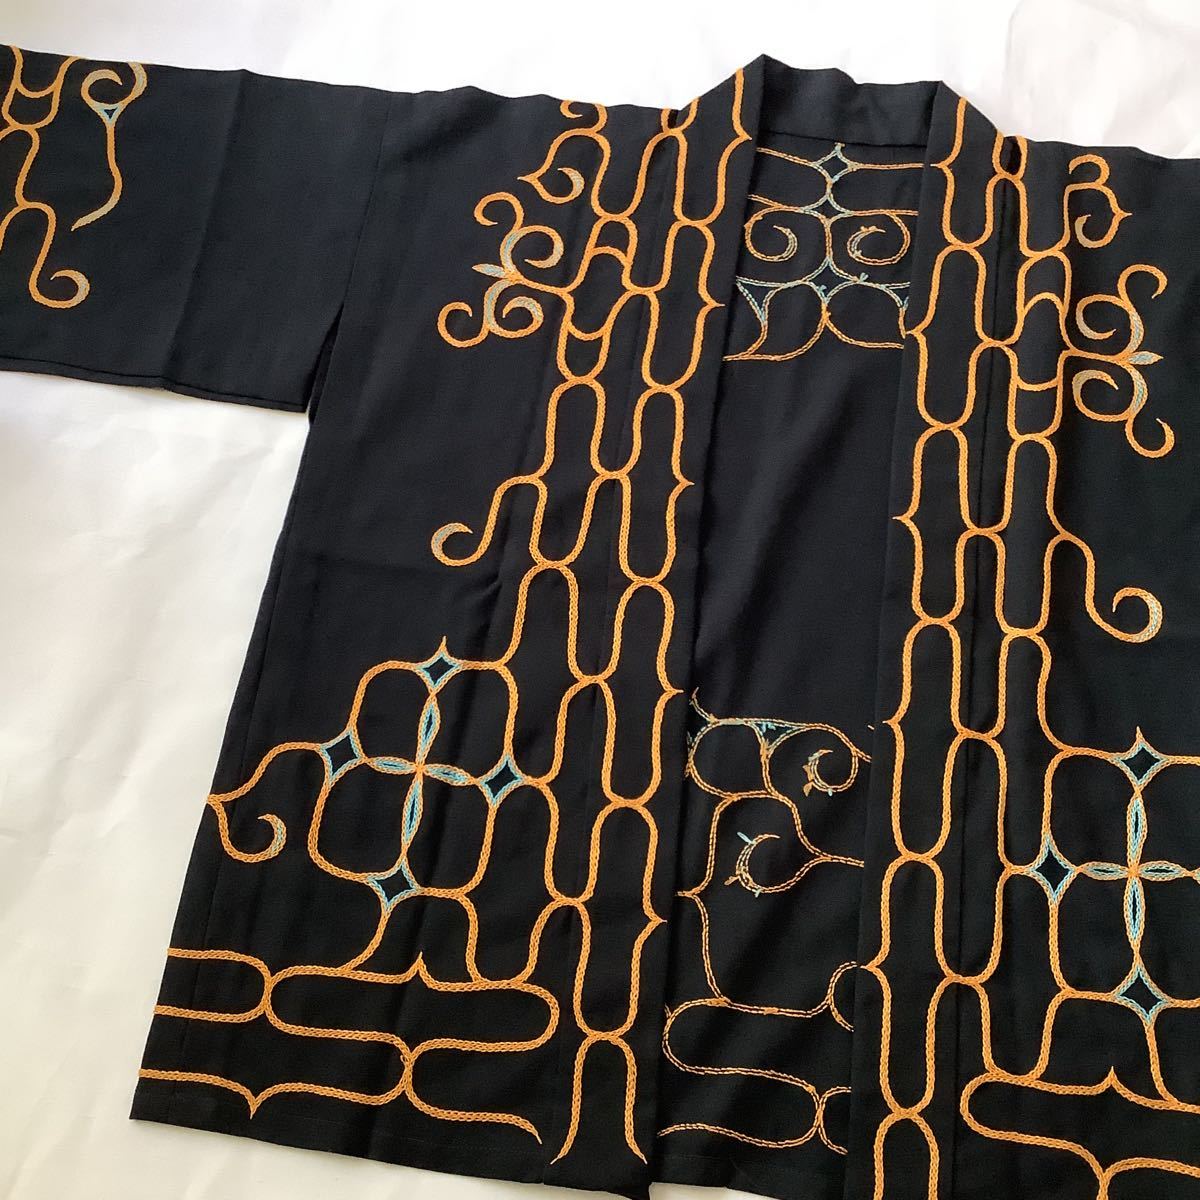 アイヌ衣装 民族衣装 ジャケット黒 刺繍 ステッチ刺繍 北海道土産 法被 羽織